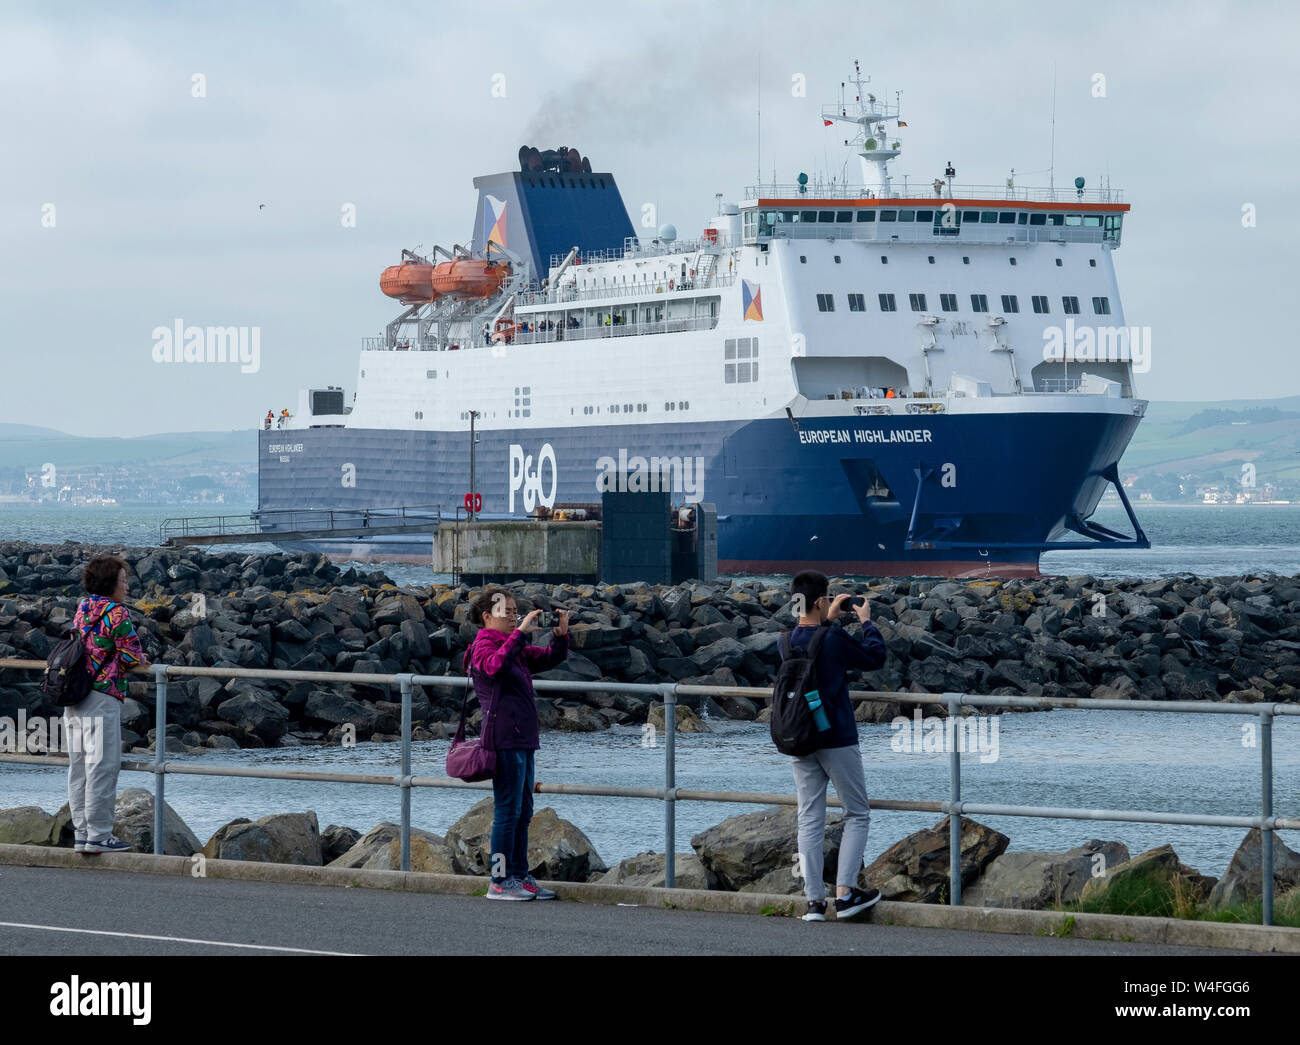 La P & O European Highlander attracco del traghetto a Cairnryan terminale Stranraer arrivando da Larne in Irlanda del Nord. Foto Stock